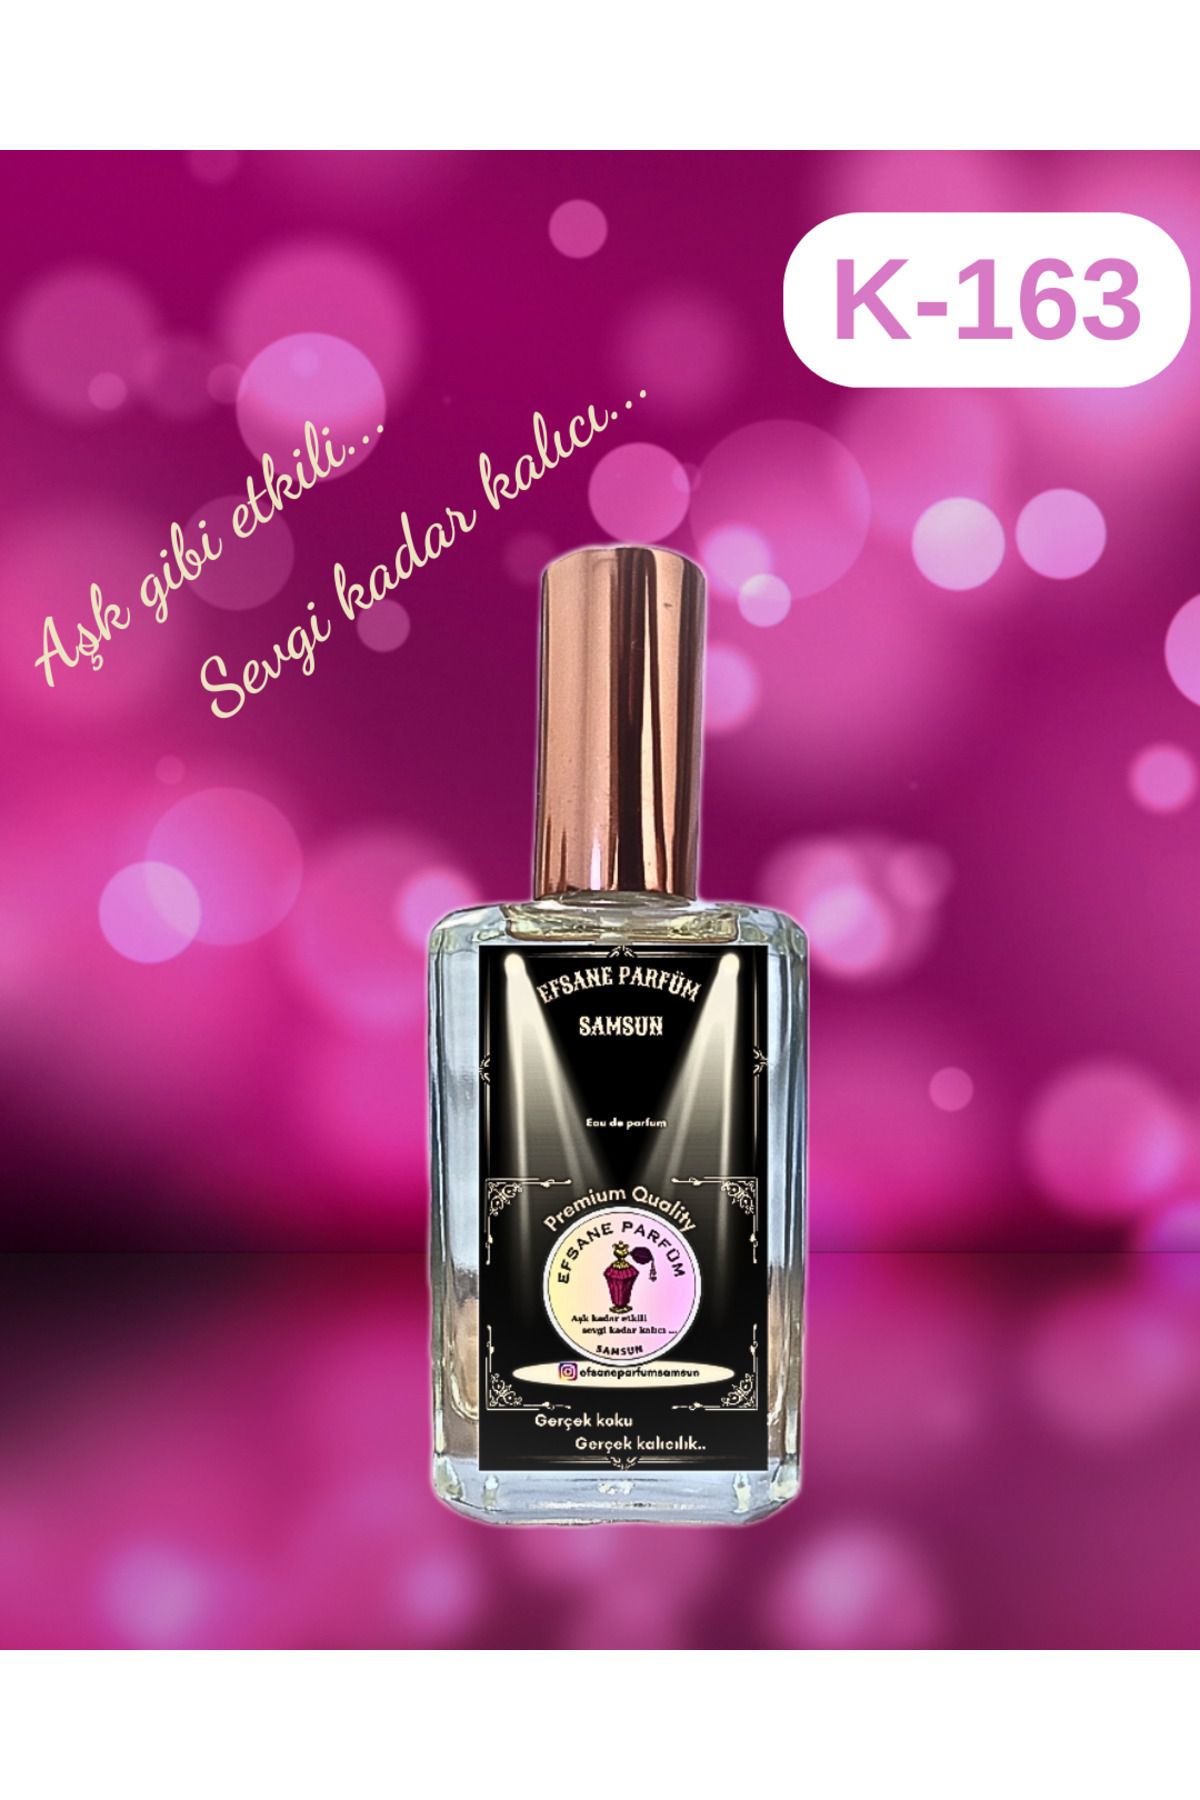 Efsane parfüm Victoria's SECRET Very SEXY Kadın Parfüm Muadil 50 ml K-163